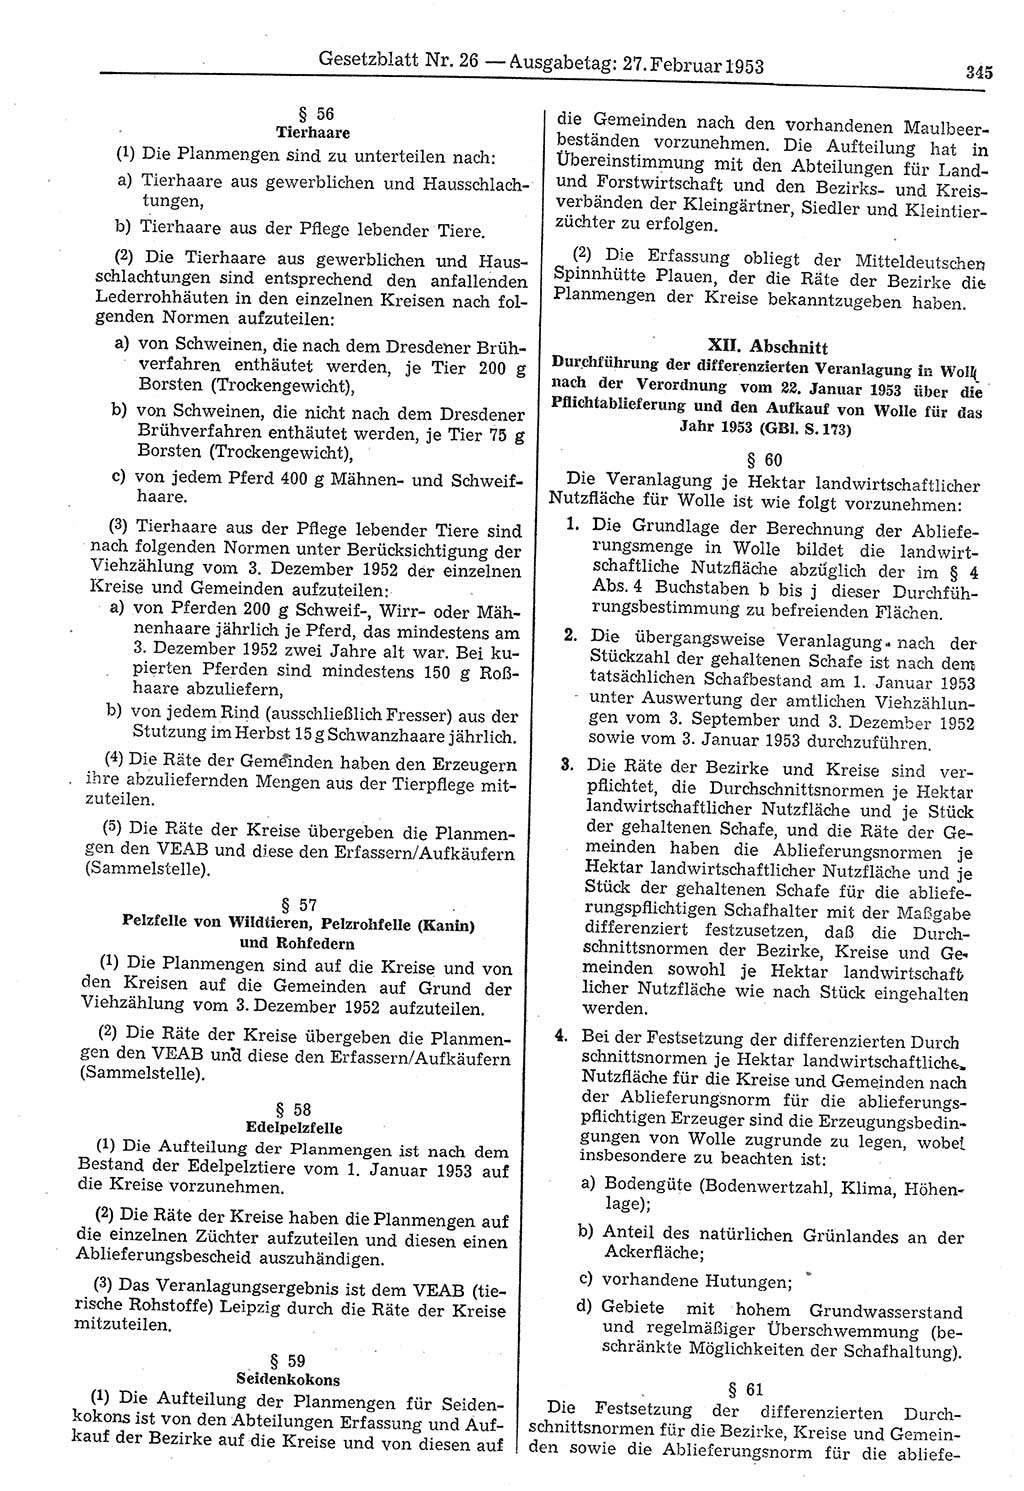 Gesetzblatt (GBl.) der Deutschen Demokratischen Republik (DDR) 1953, Seite 345 (GBl. DDR 1953, S. 345)